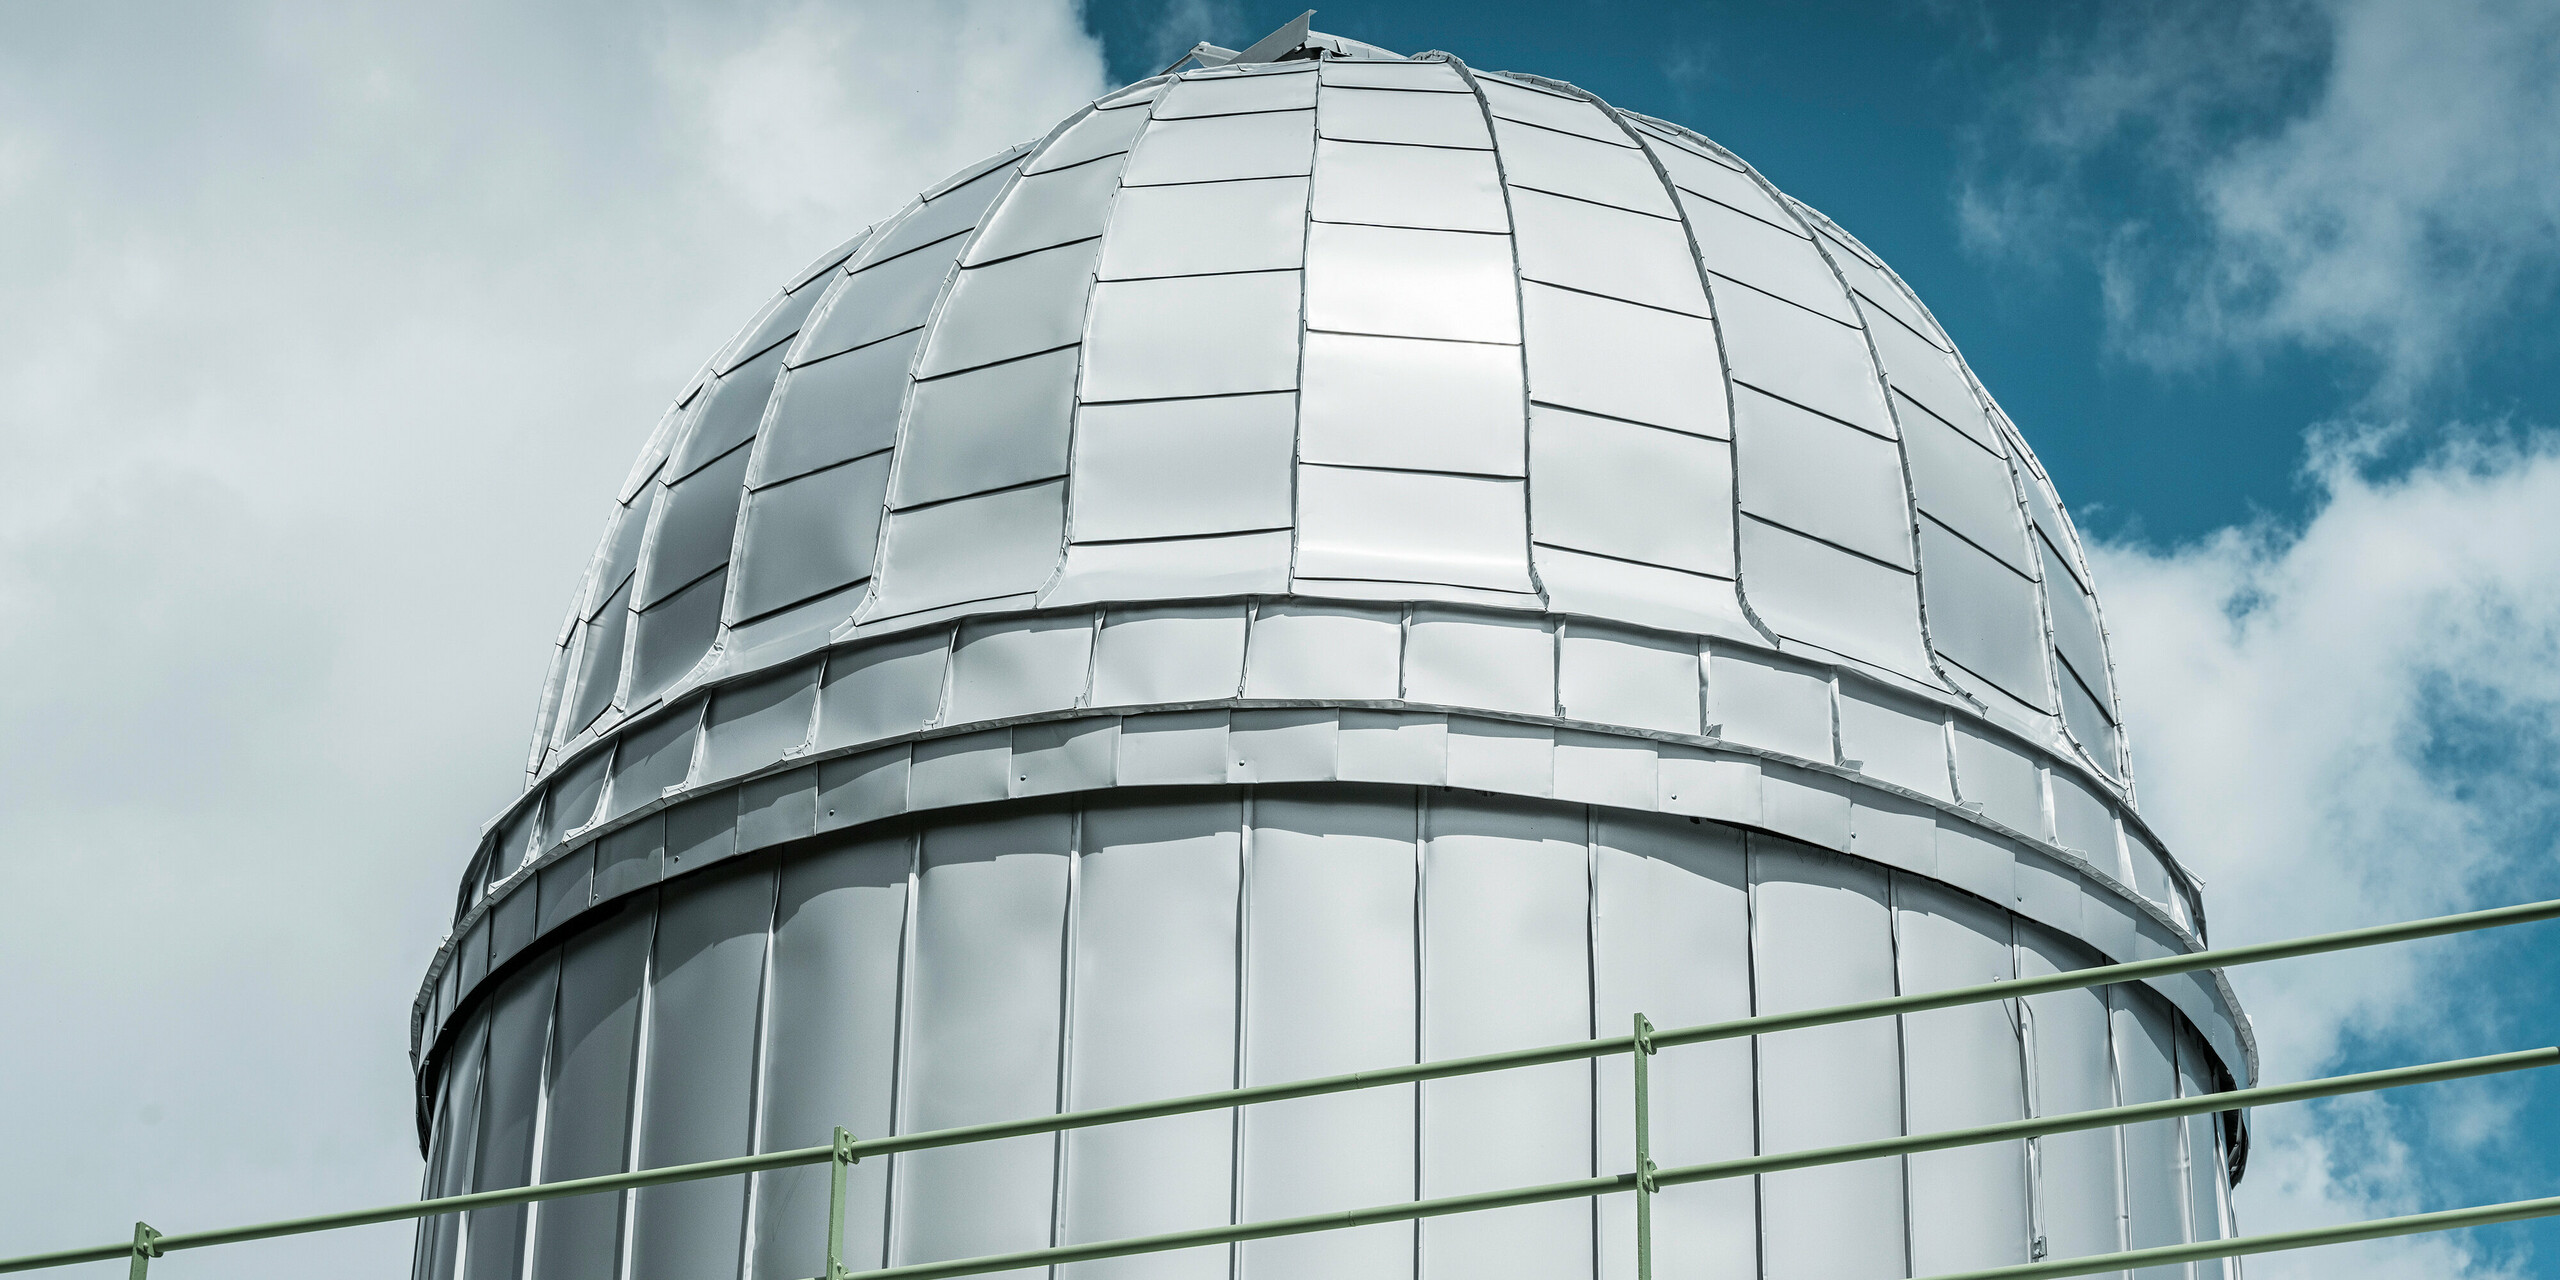 Detailansicht der strahlenden Kuppel der Sternwarte Skalnaty Pleso, umhüllt in PREFALZ in Silbermetallic. Die glänzende Aluminiumverkleidung spiegelt den blauen Himmel wider und symbolisiert die Beständigkeit gegenüber den anspruchsvollen klimatischen Bedingungen in 1.783 Metern Höhe.